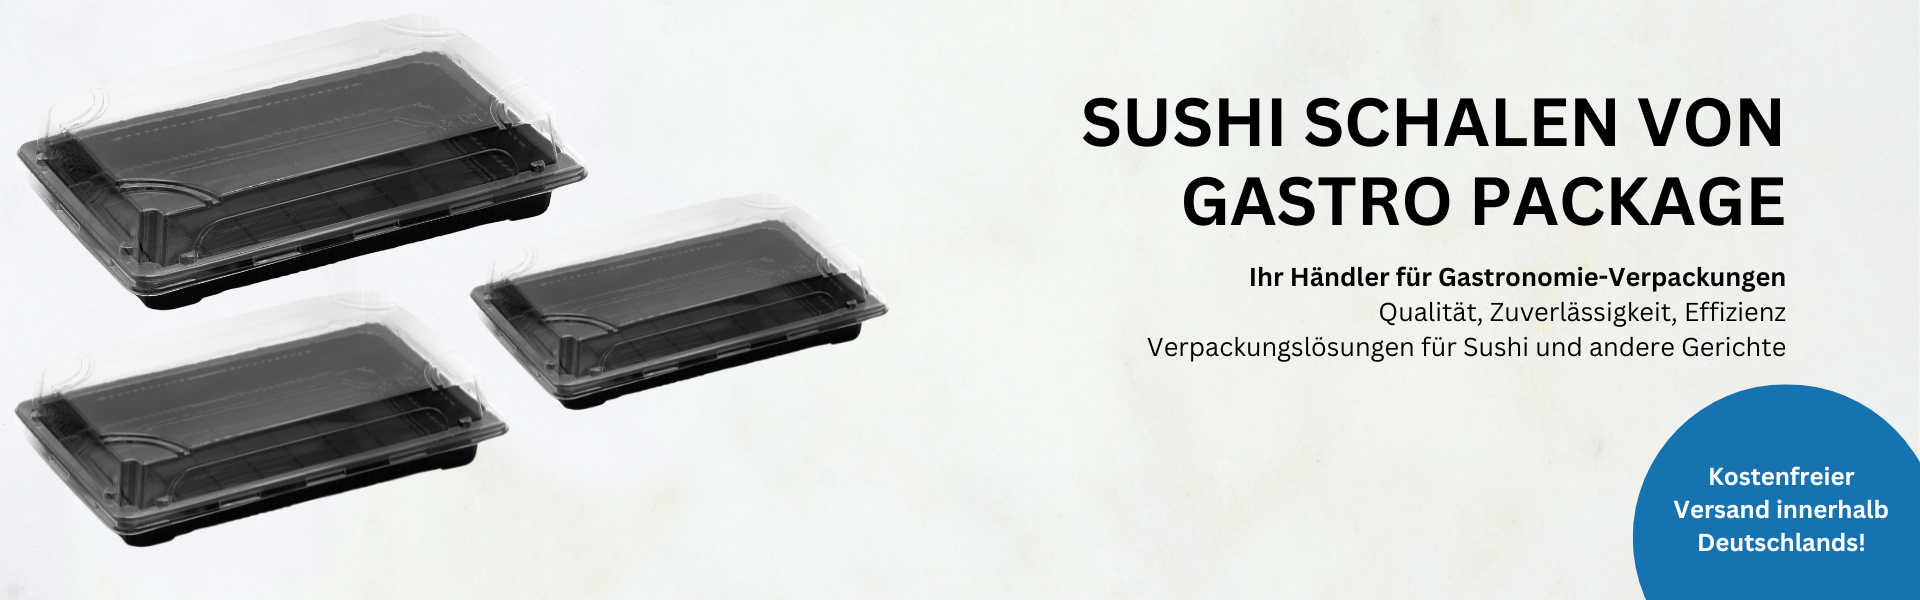 Sushi Schalen Gastro Package